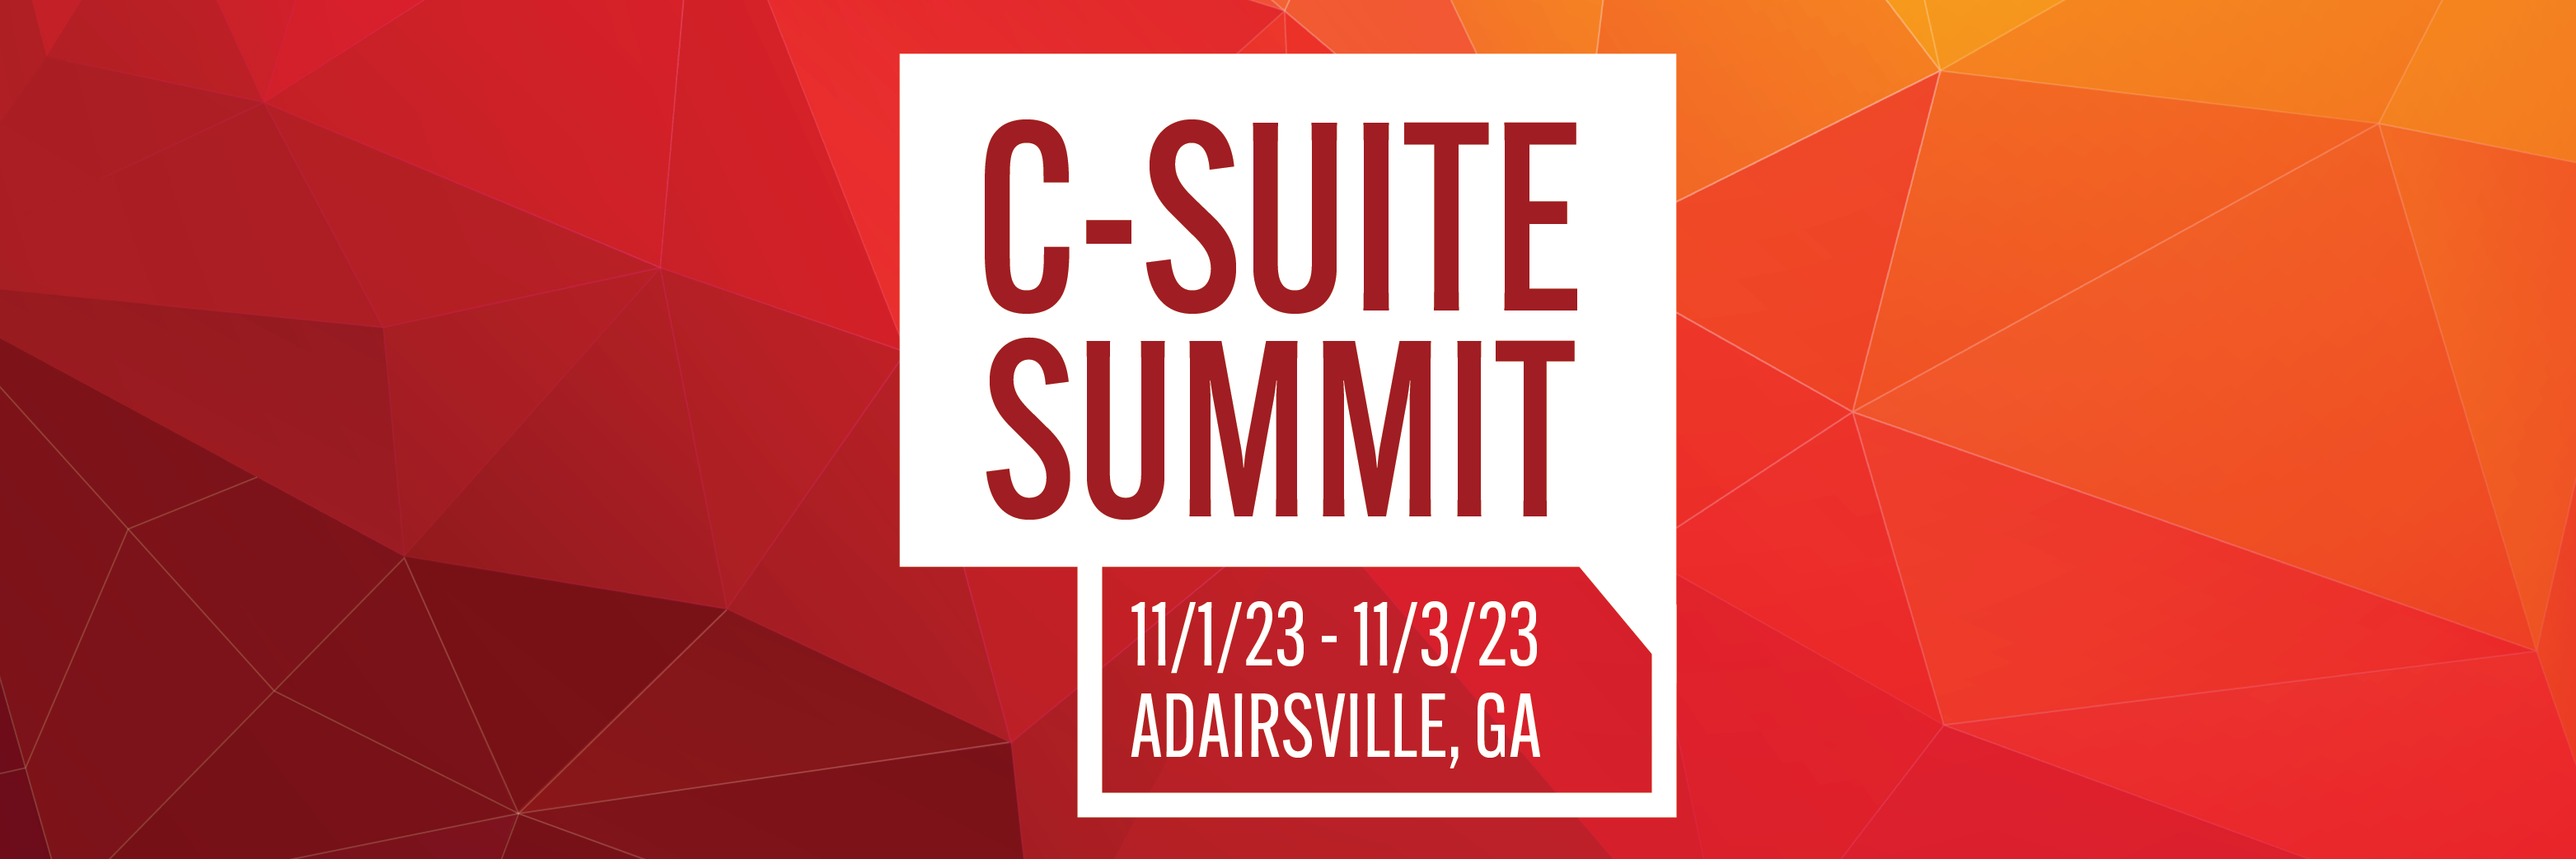 C-Suite Summit